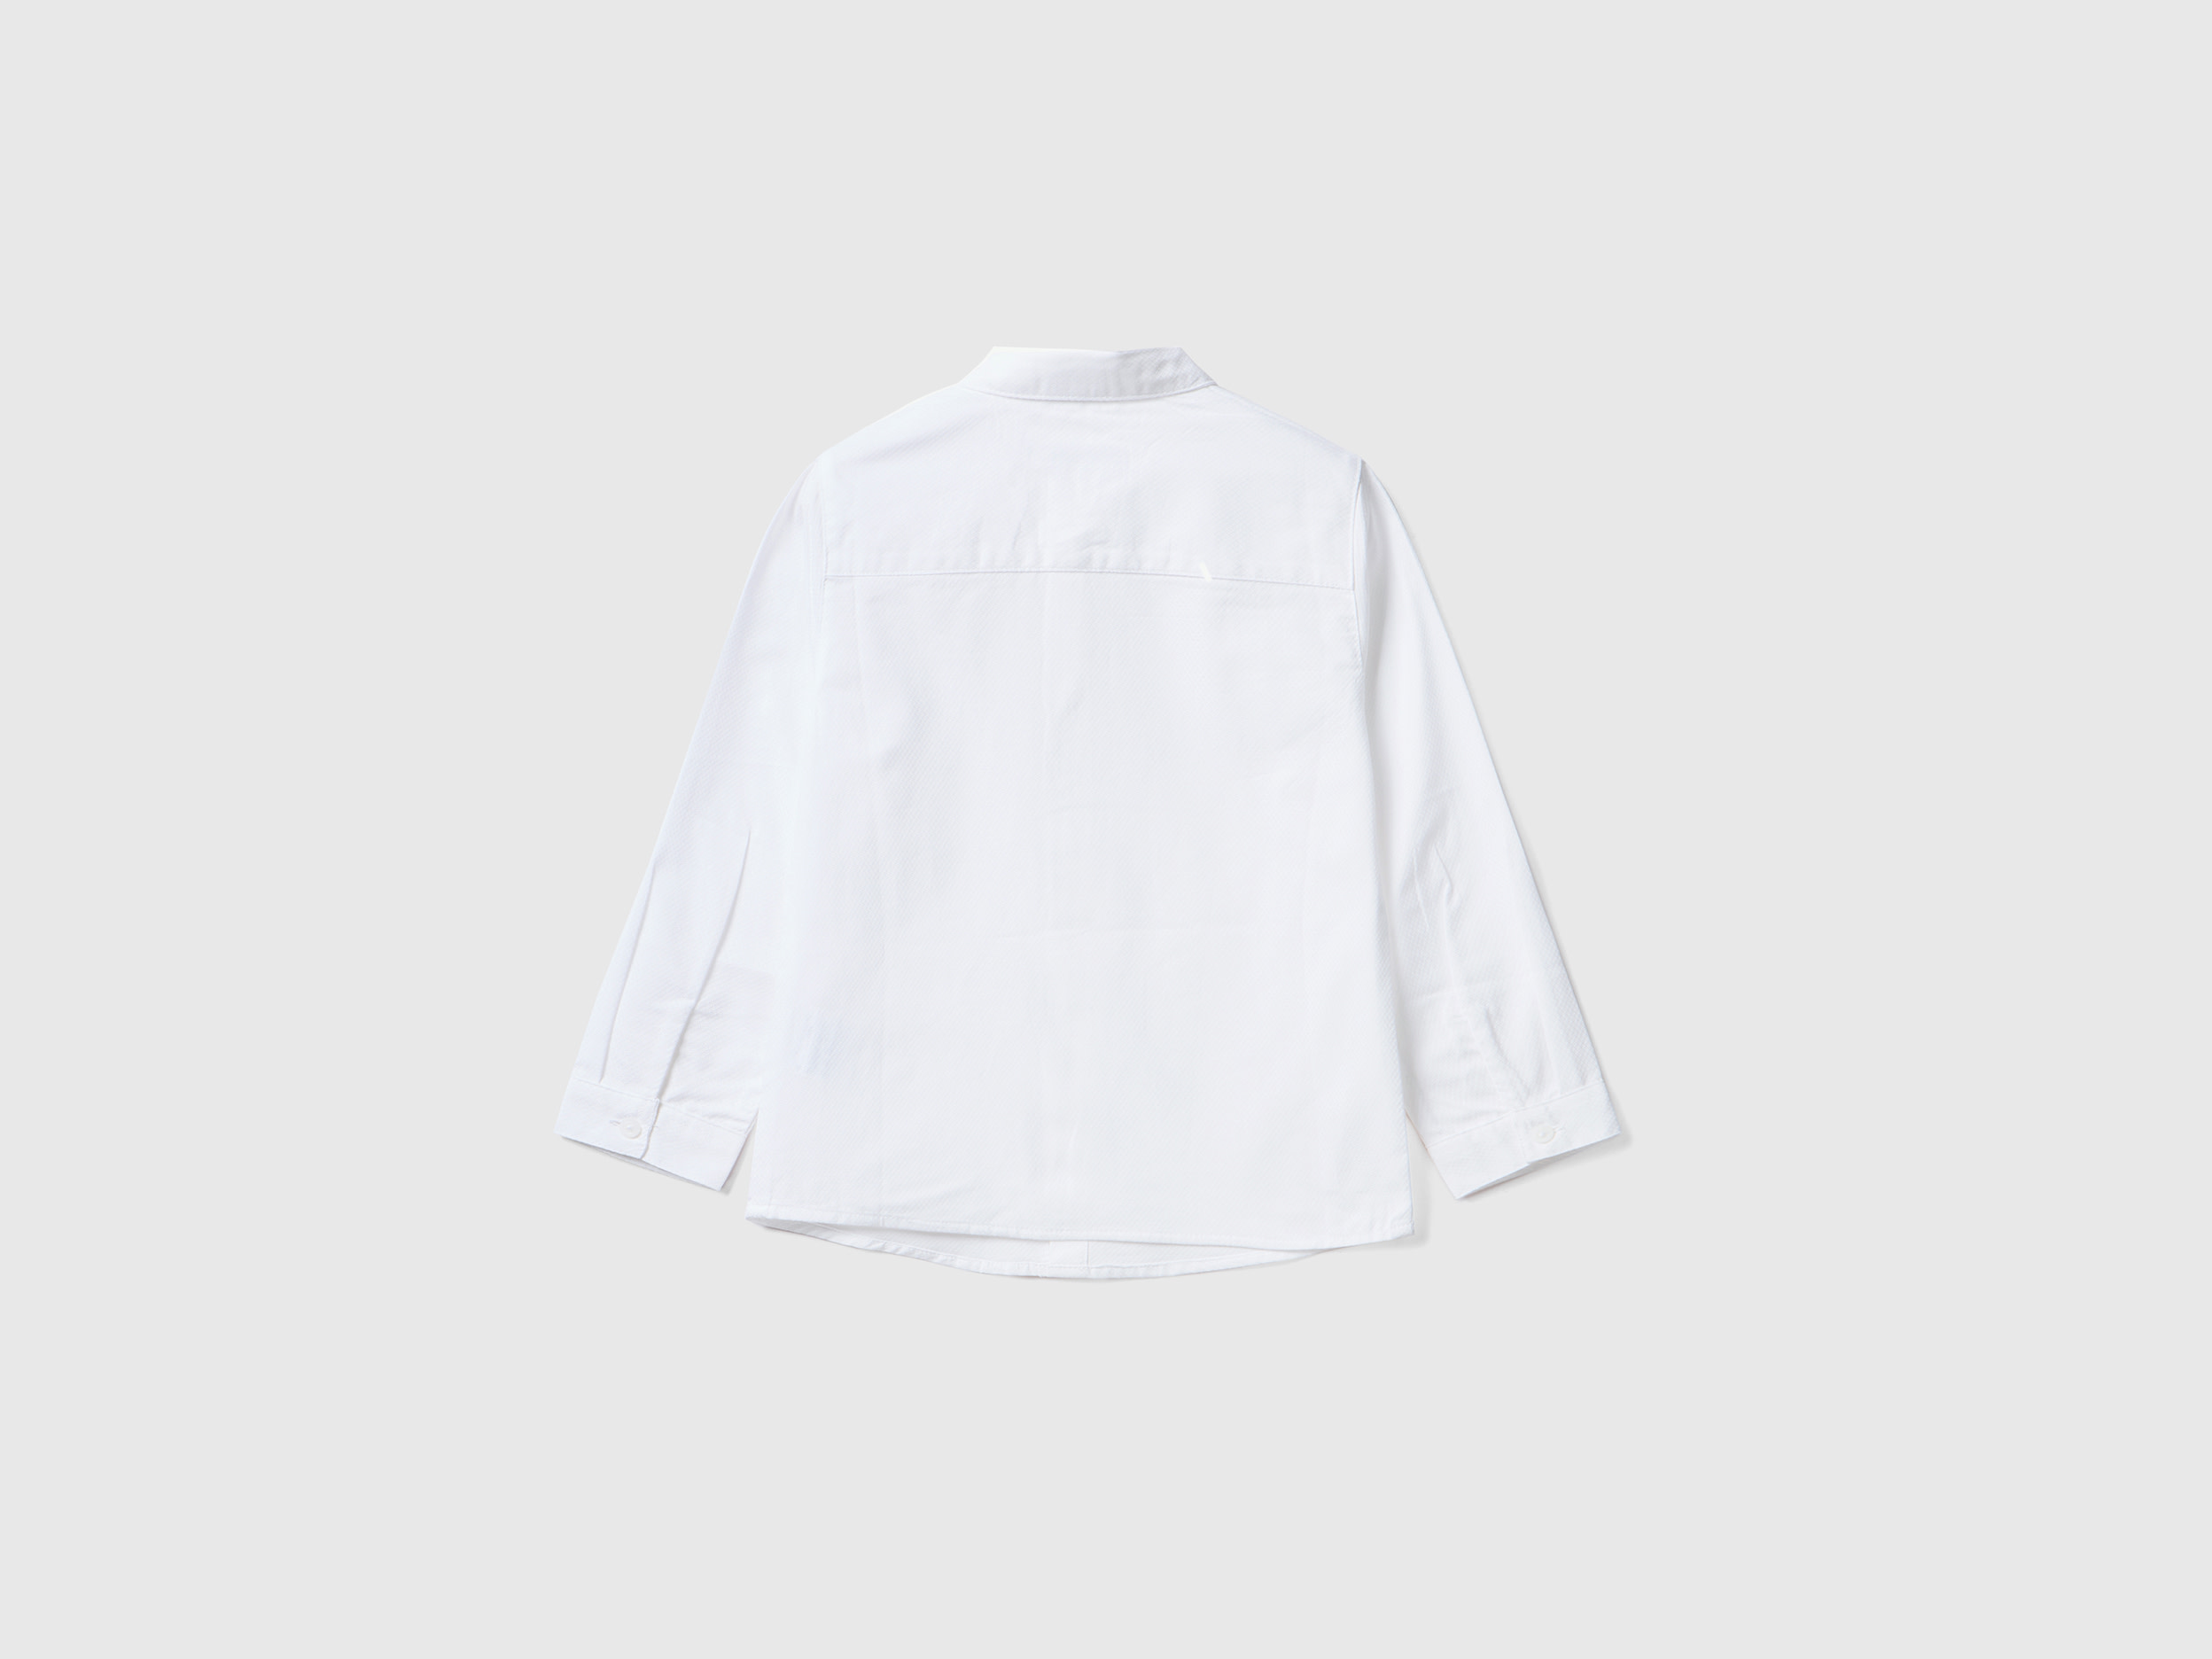 benetton, classic shirt in pure cotton, taglia 12-18, white, kids